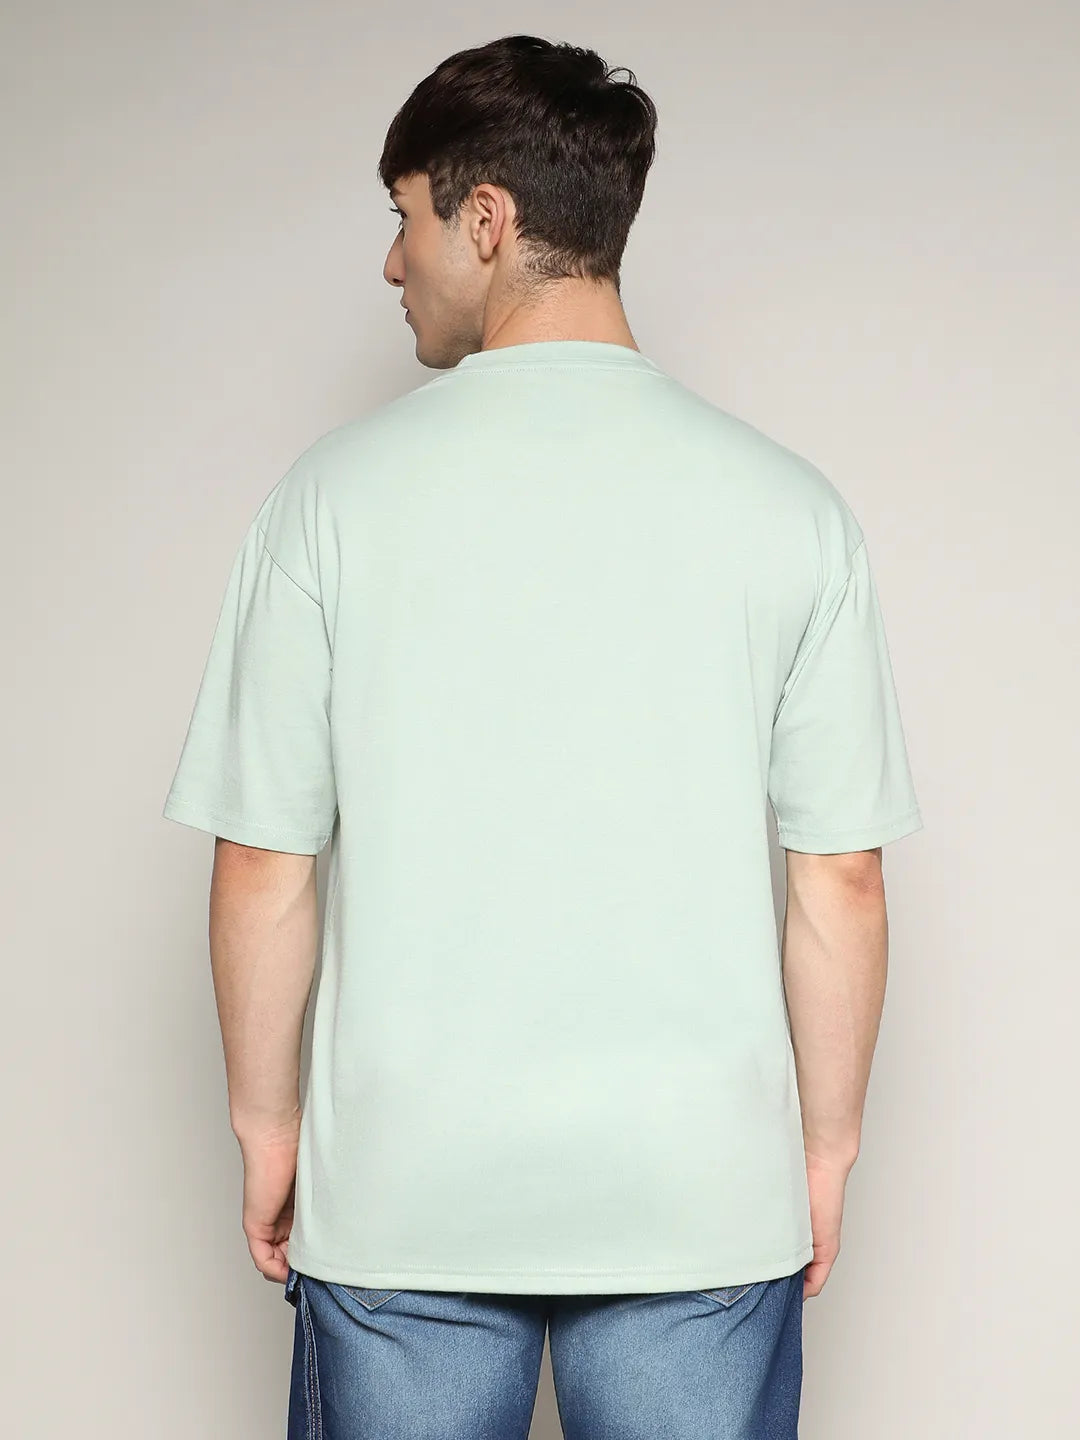 Basic Oversized T-Shirt